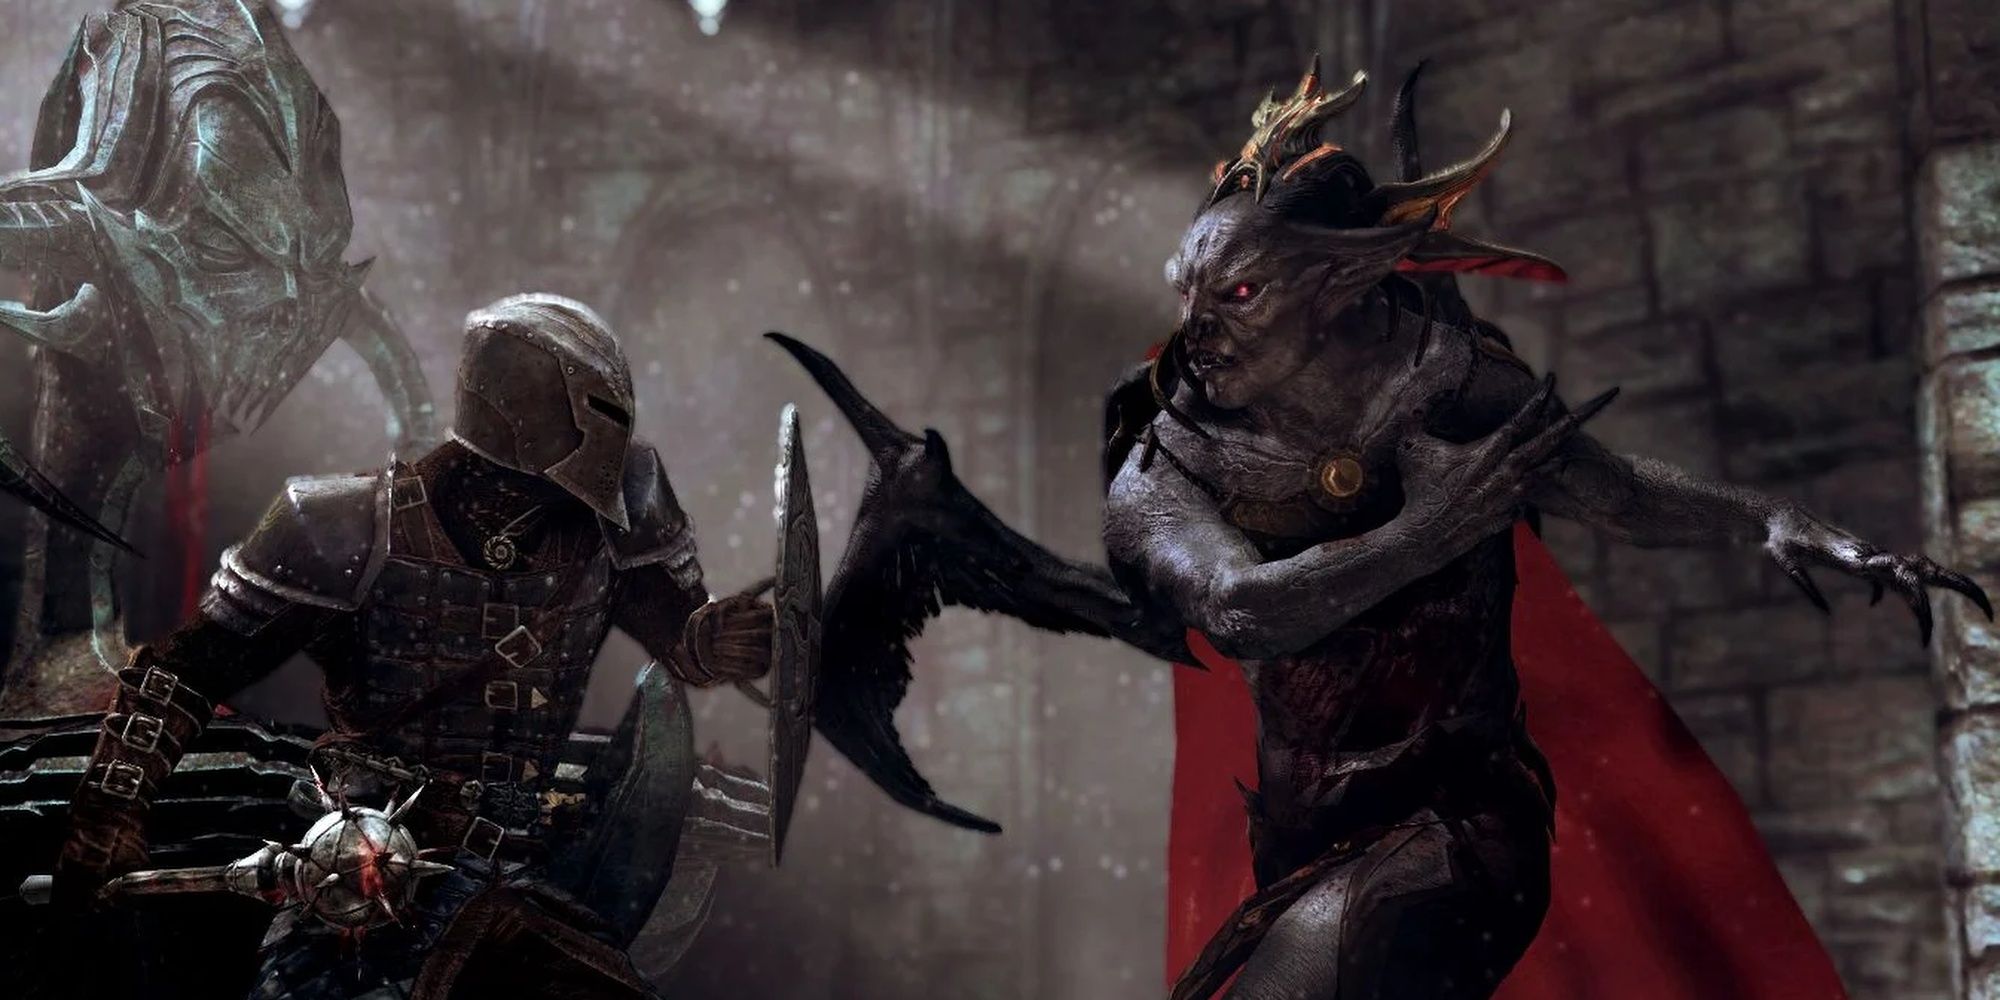 Skyrim: Dawngaurd Warrior Facing Off Against A Vampire Lord